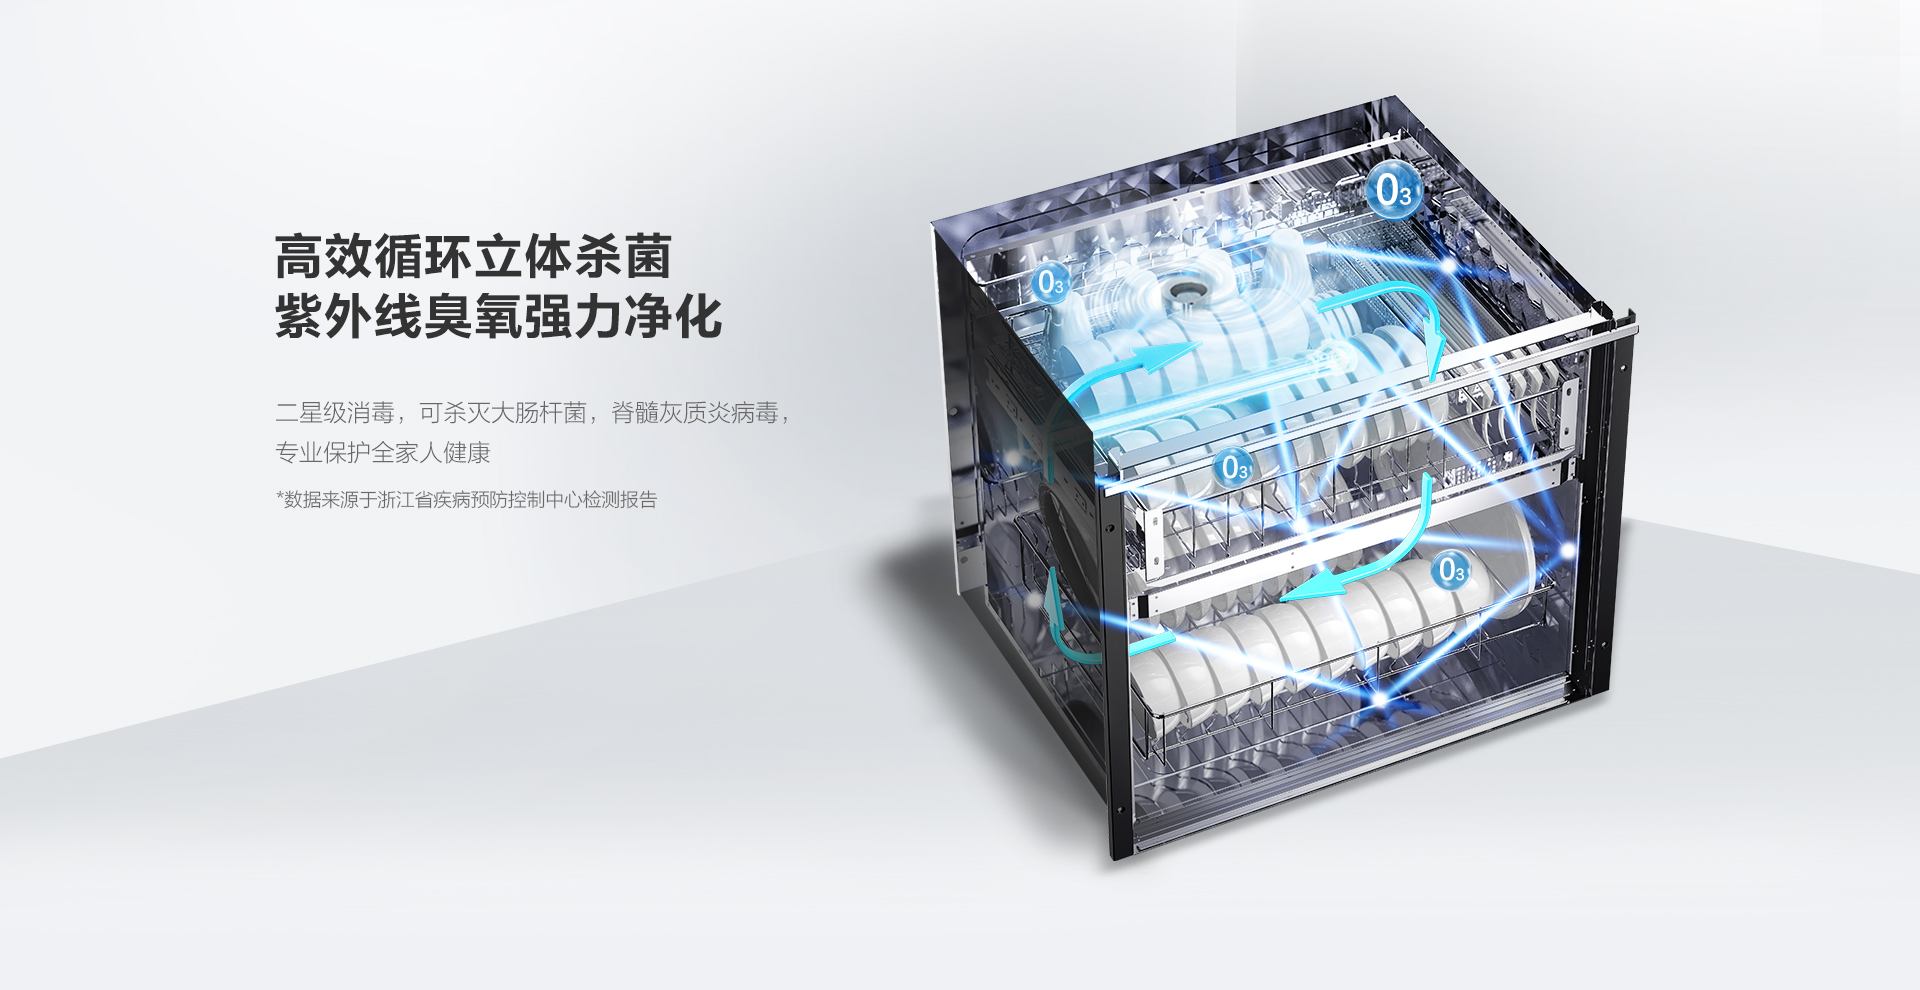 XB603消毒柜-官网上新-PC端_02.png